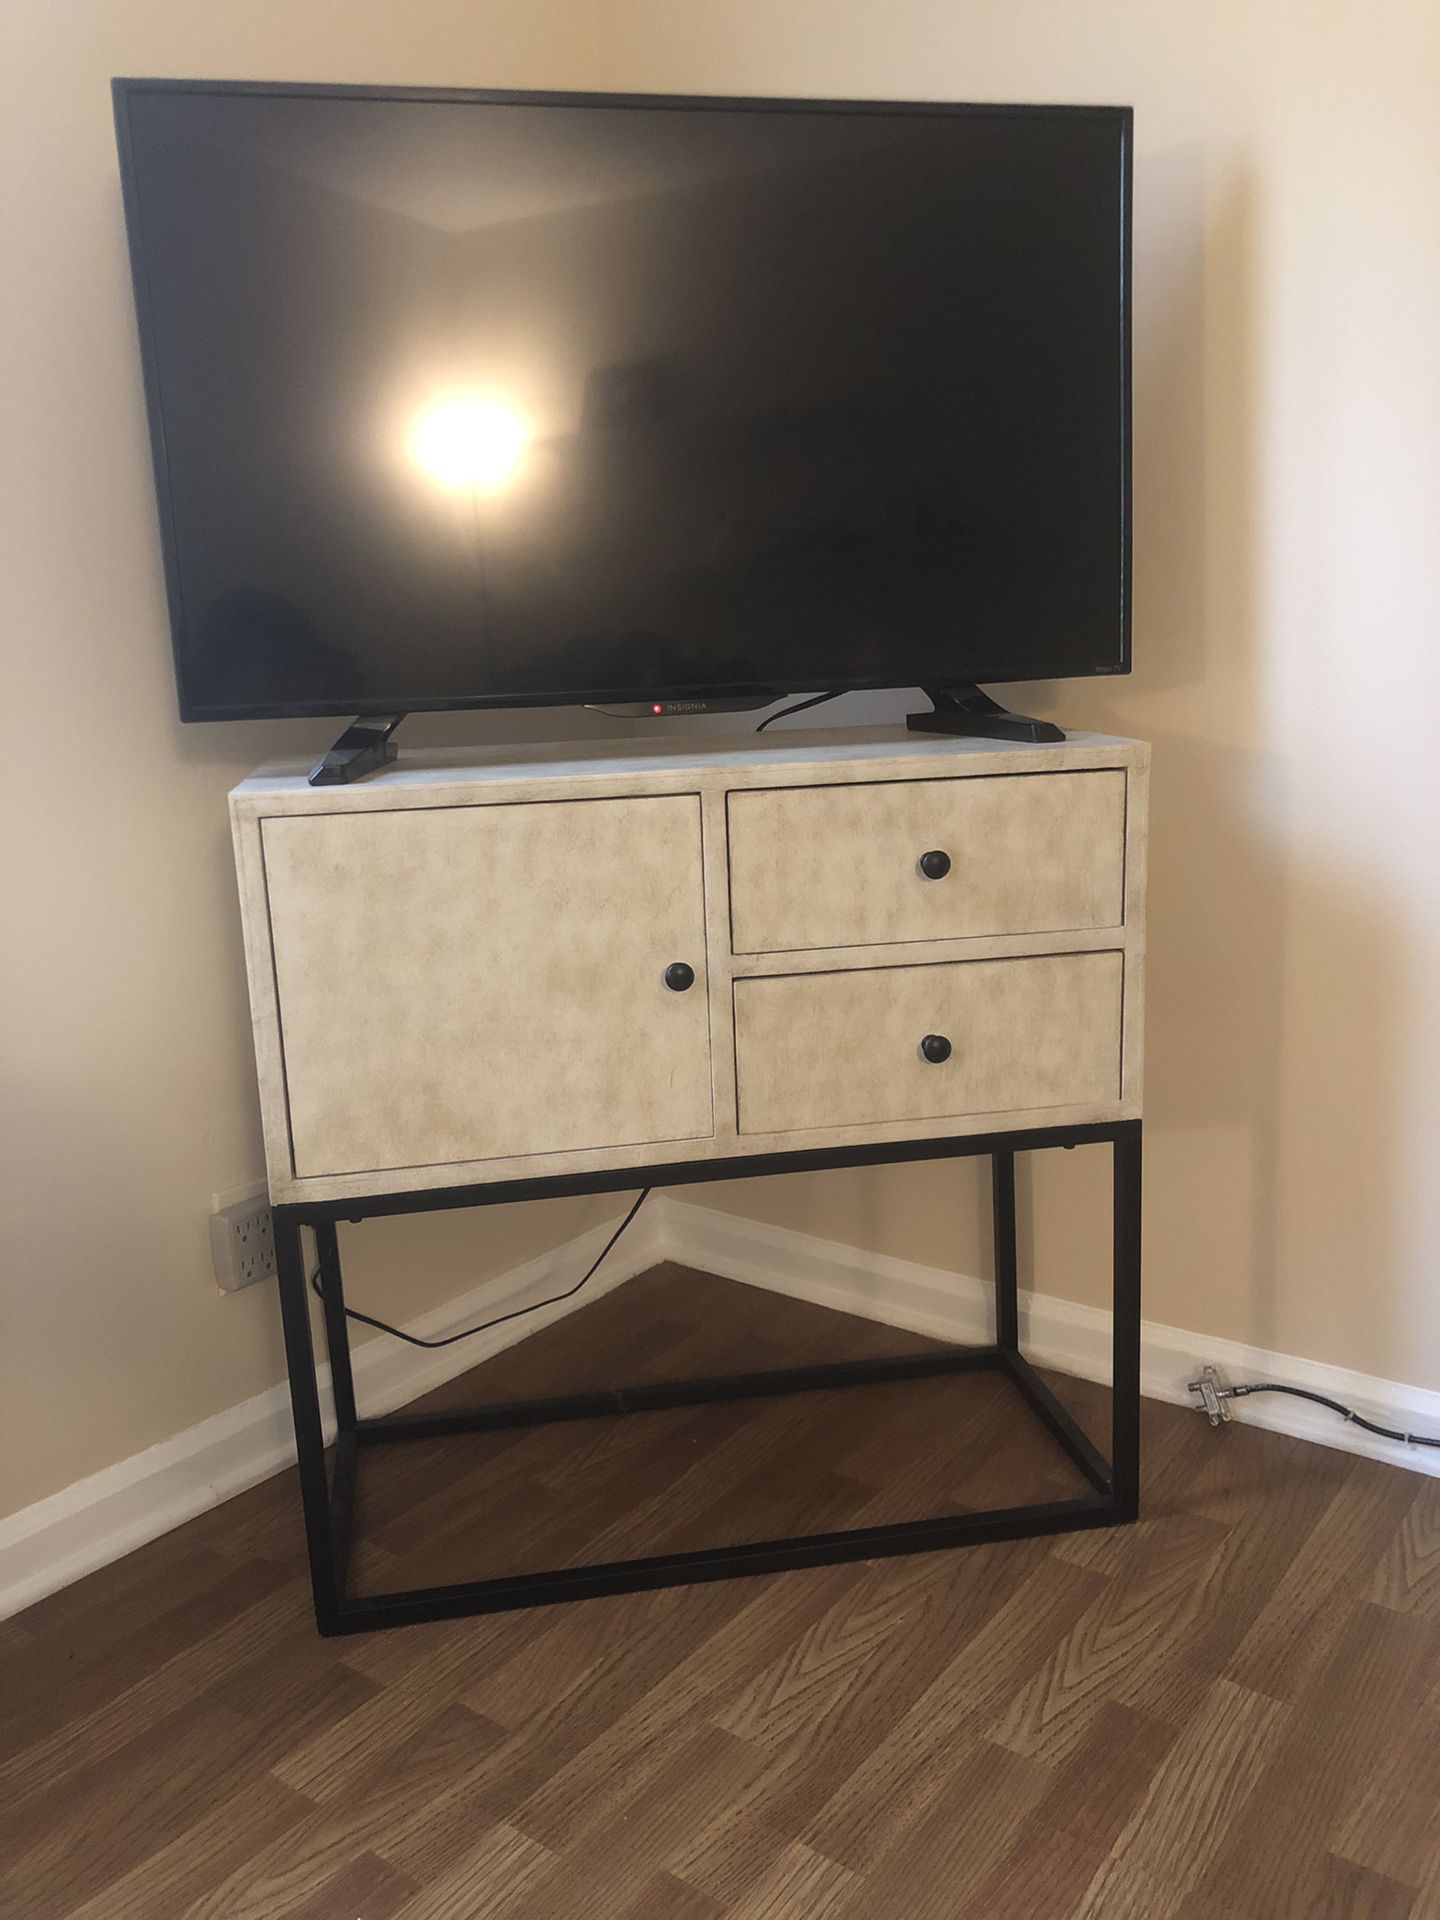 Multi-purpose TV stand